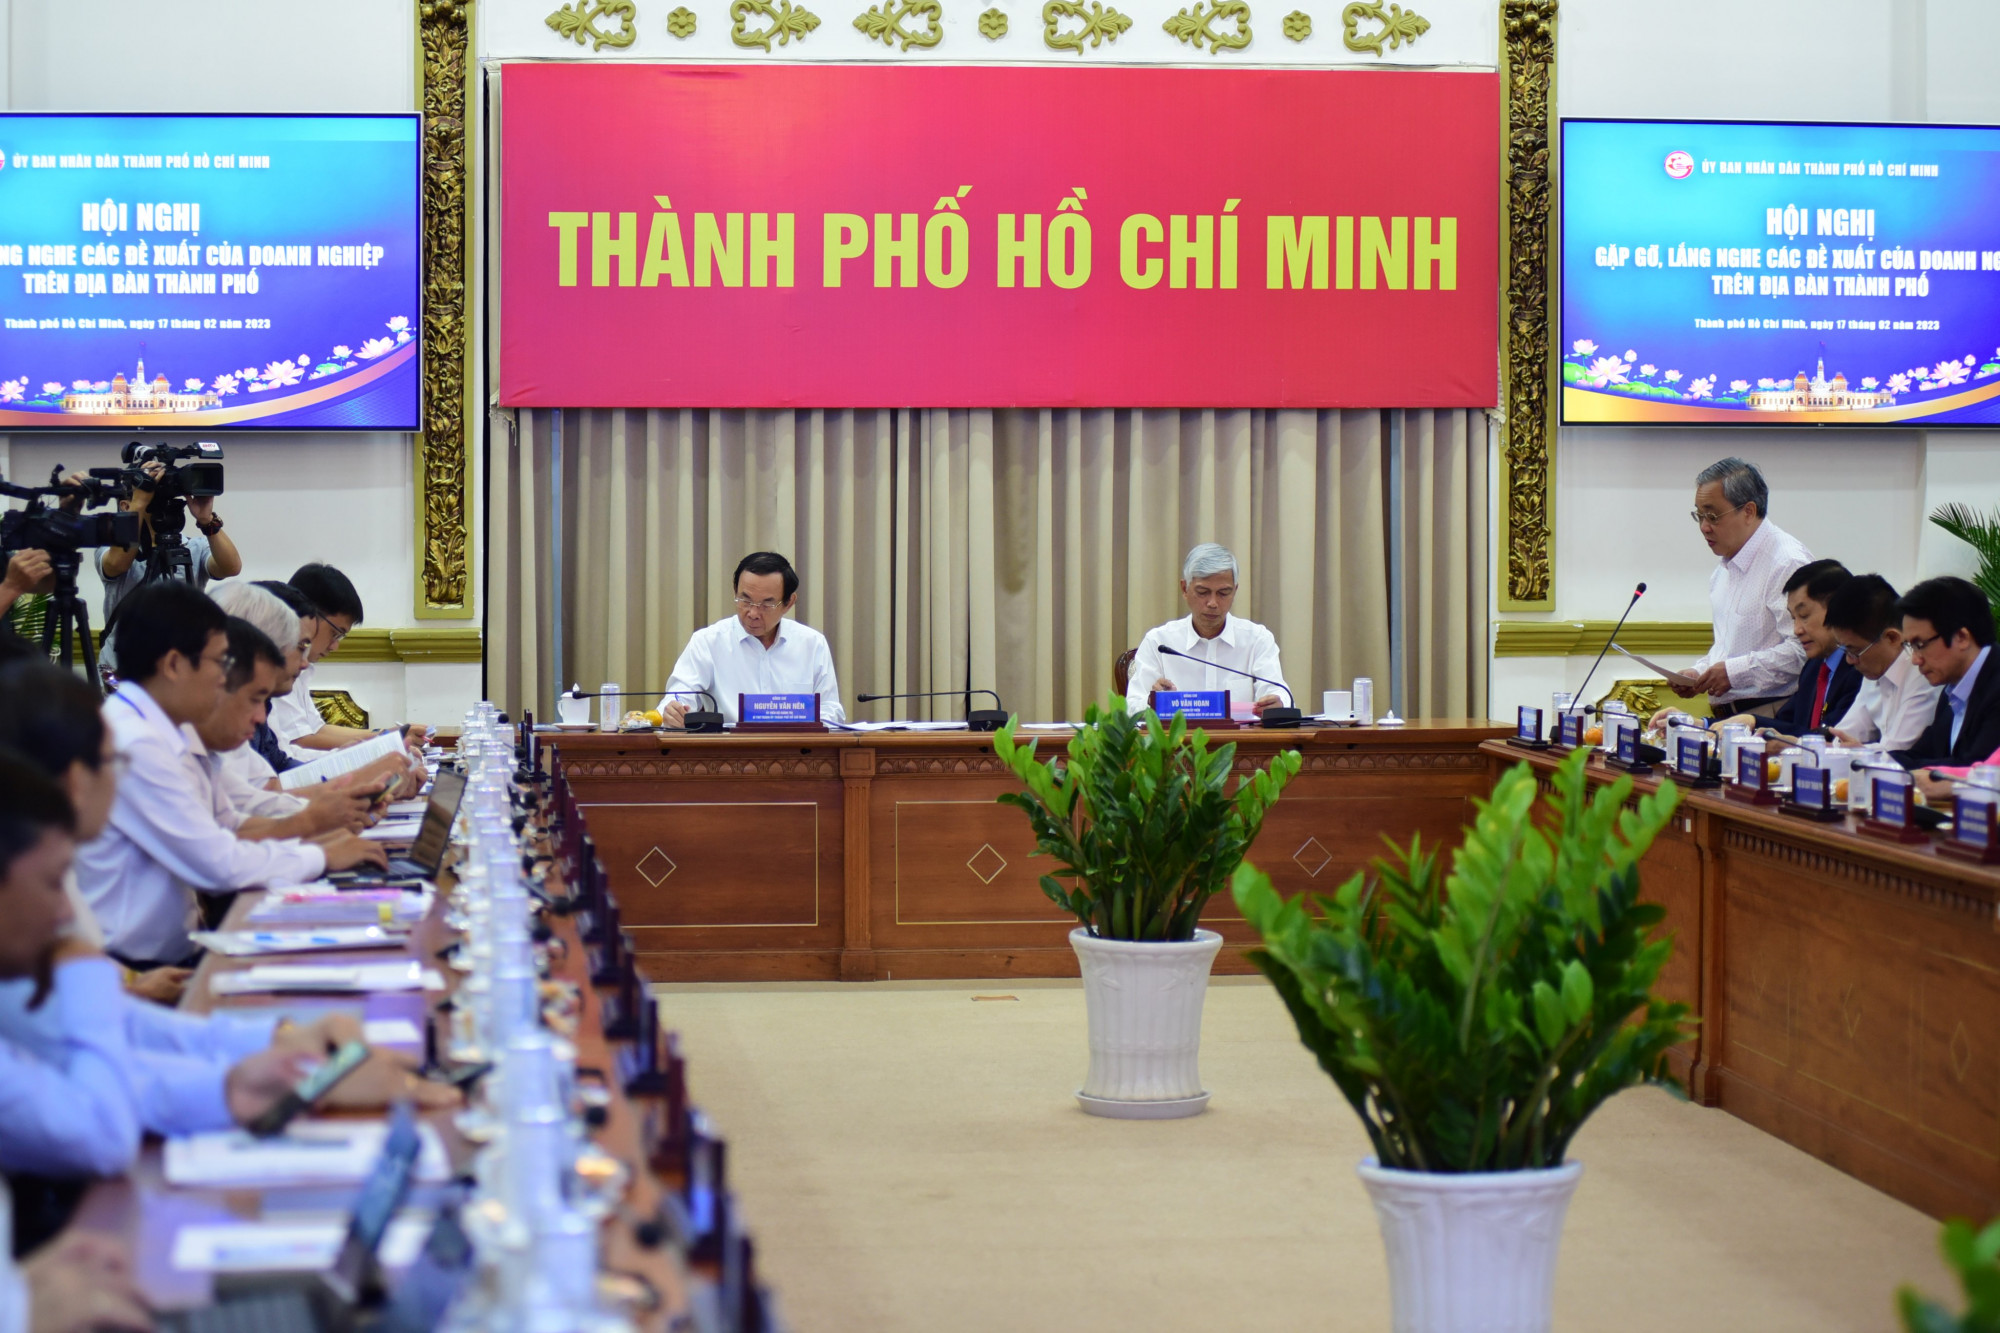 Bí thư Thành ủy TPHCM Nguyễn Văn Nên và Phó chủ tịch UBND TPHCM Võ Văn Hoan chủ trì hội nghị